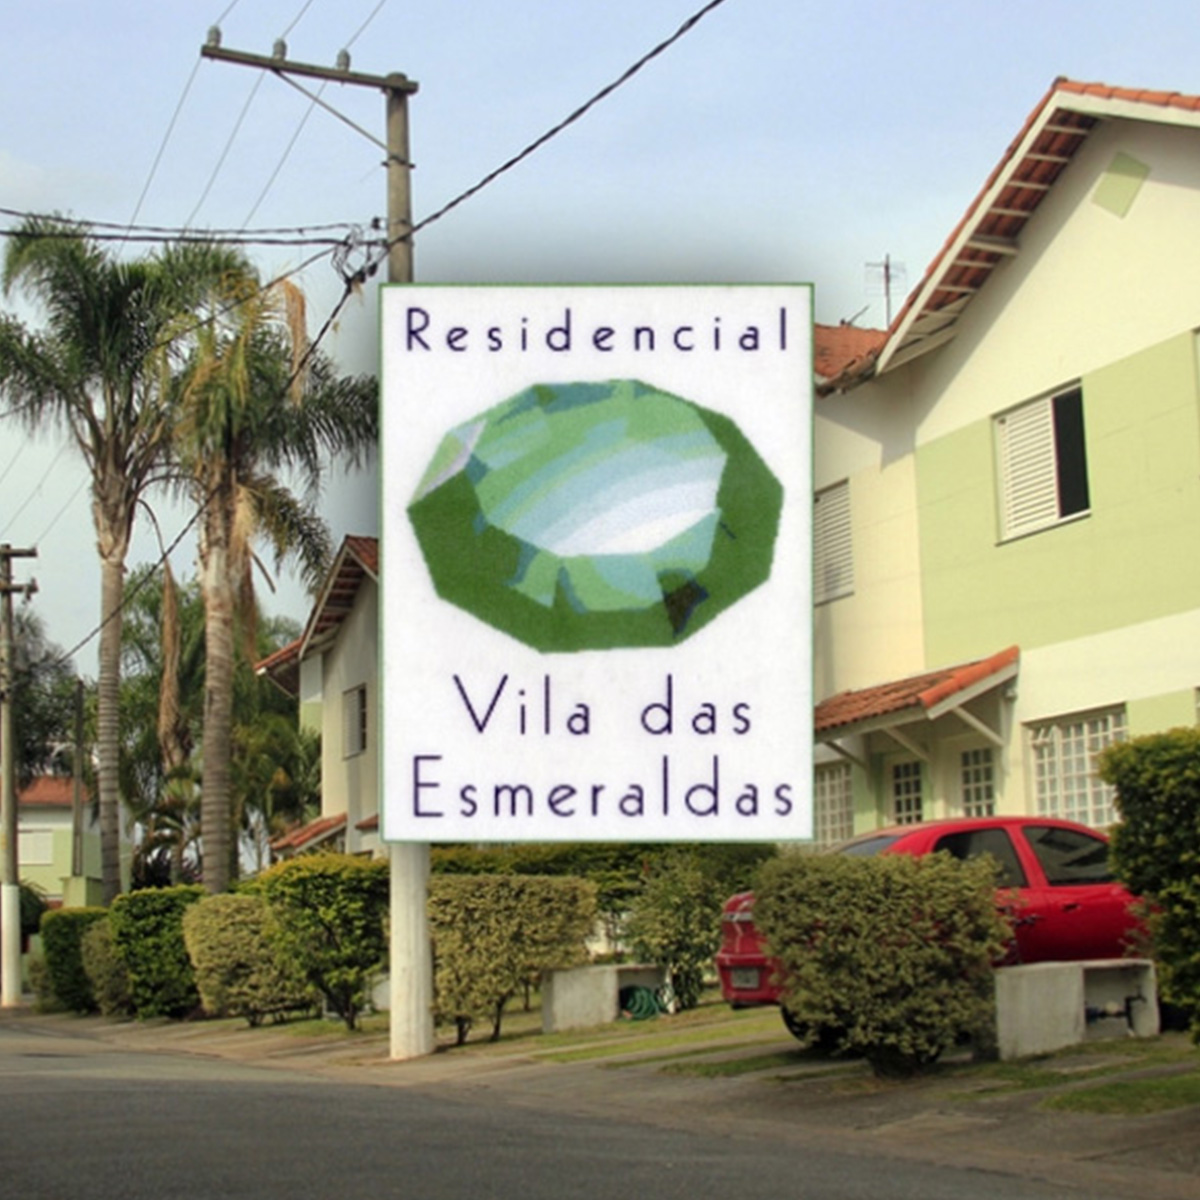 Residencial Vila das Esmeraldas